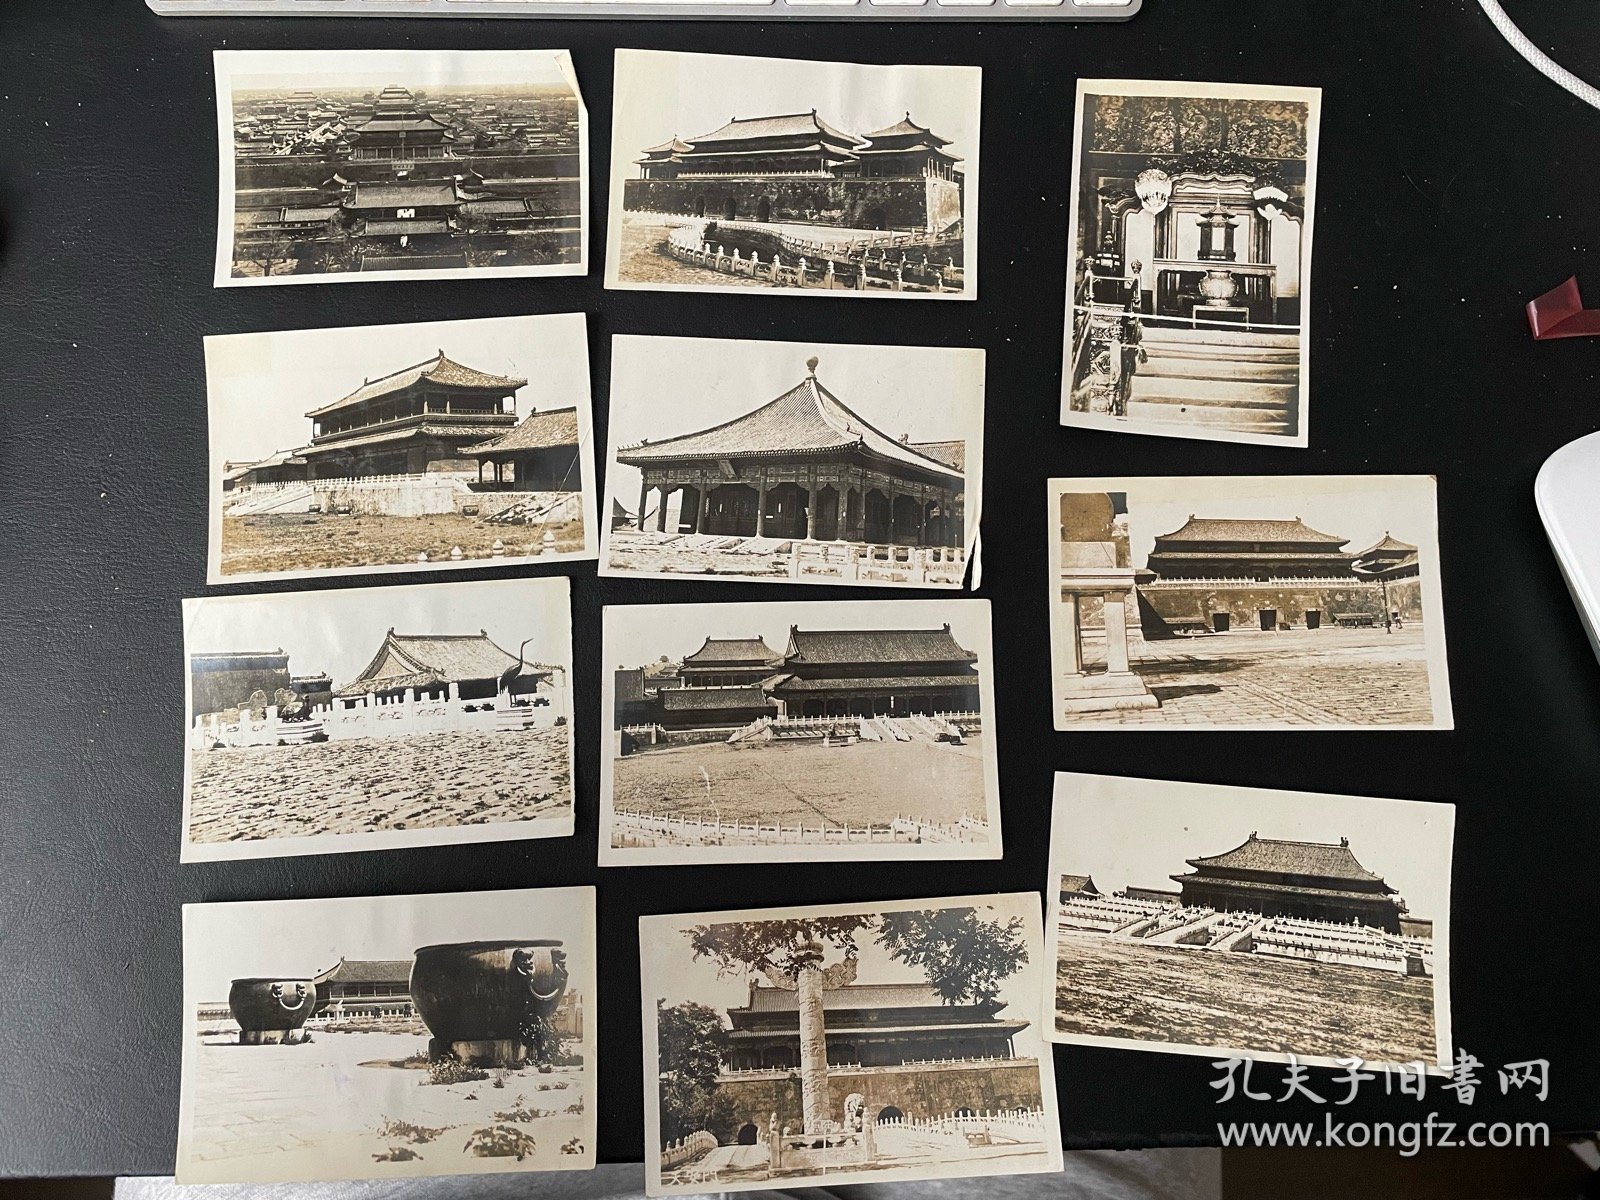 民国，北京故宫银盐照片11张。长10厘米宽7厘米，包老包真。